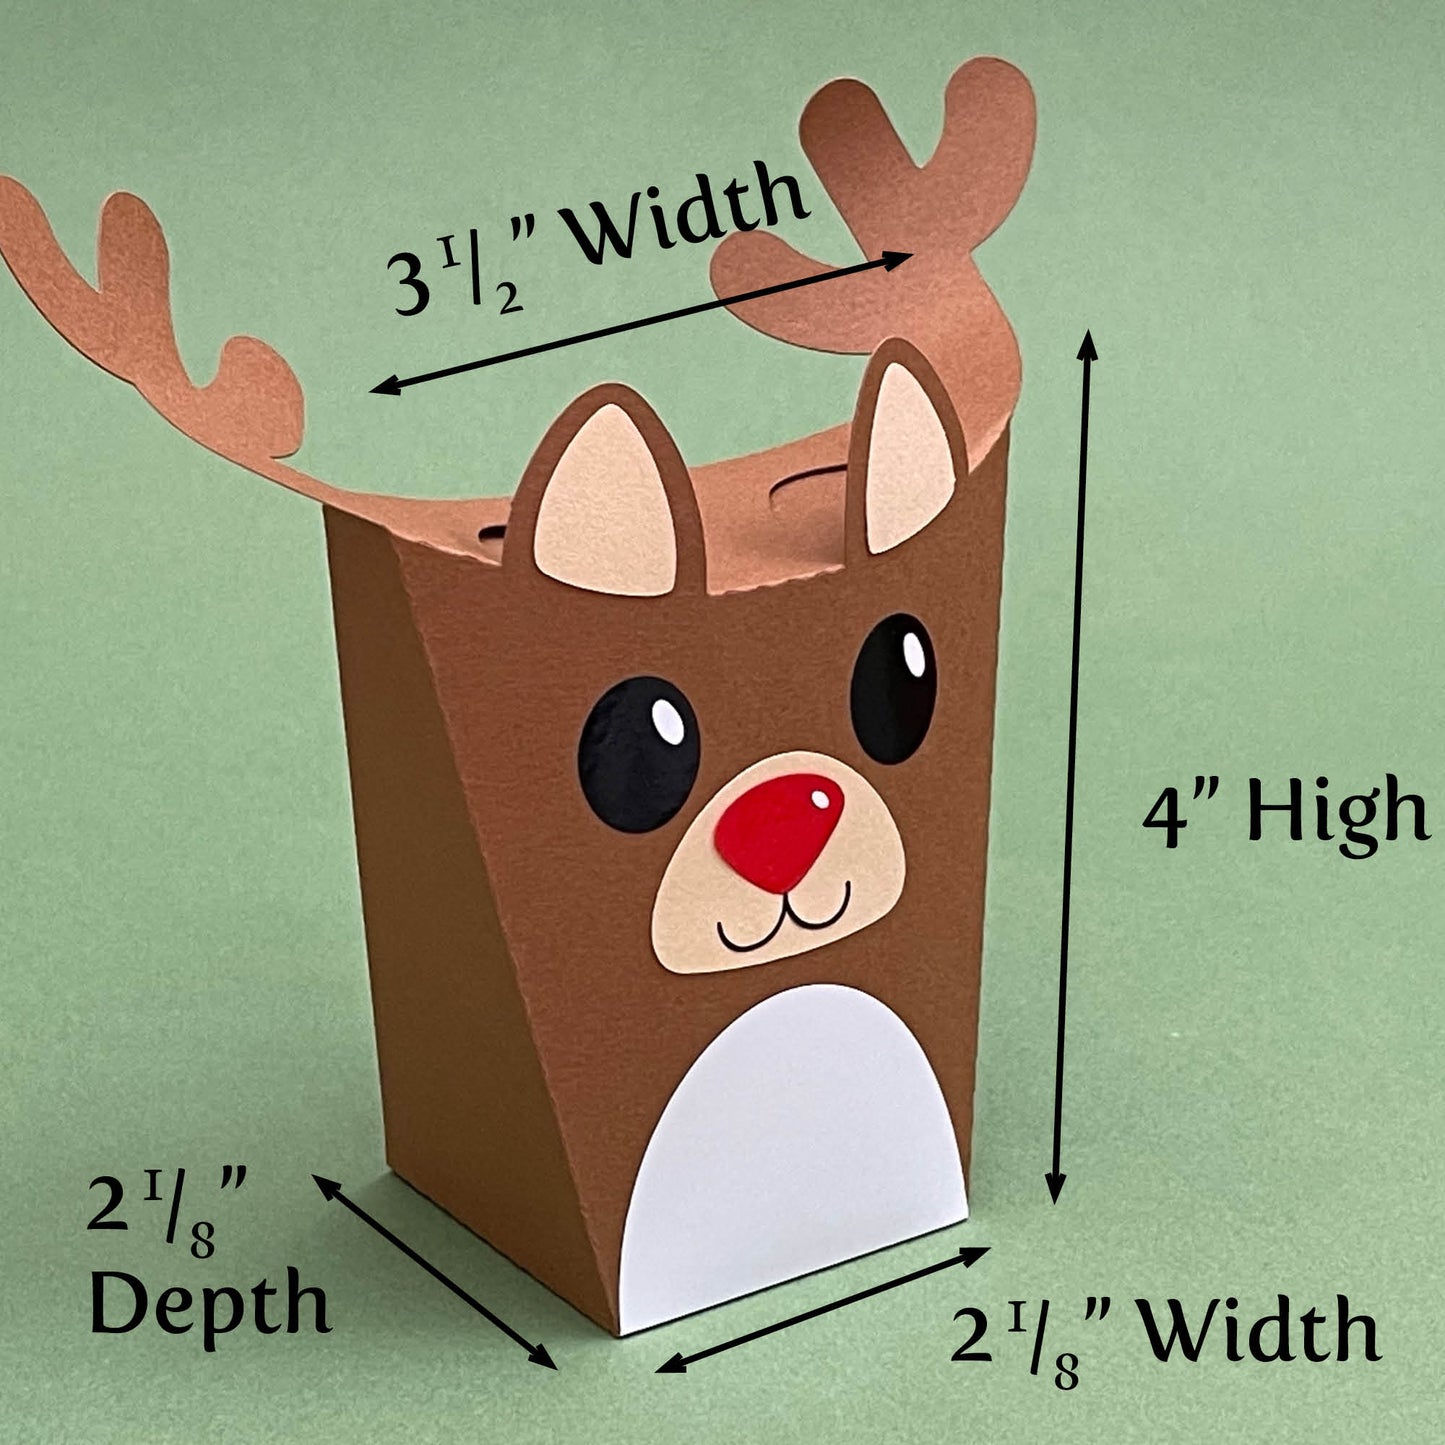 Reindeer Gift Box - PDF